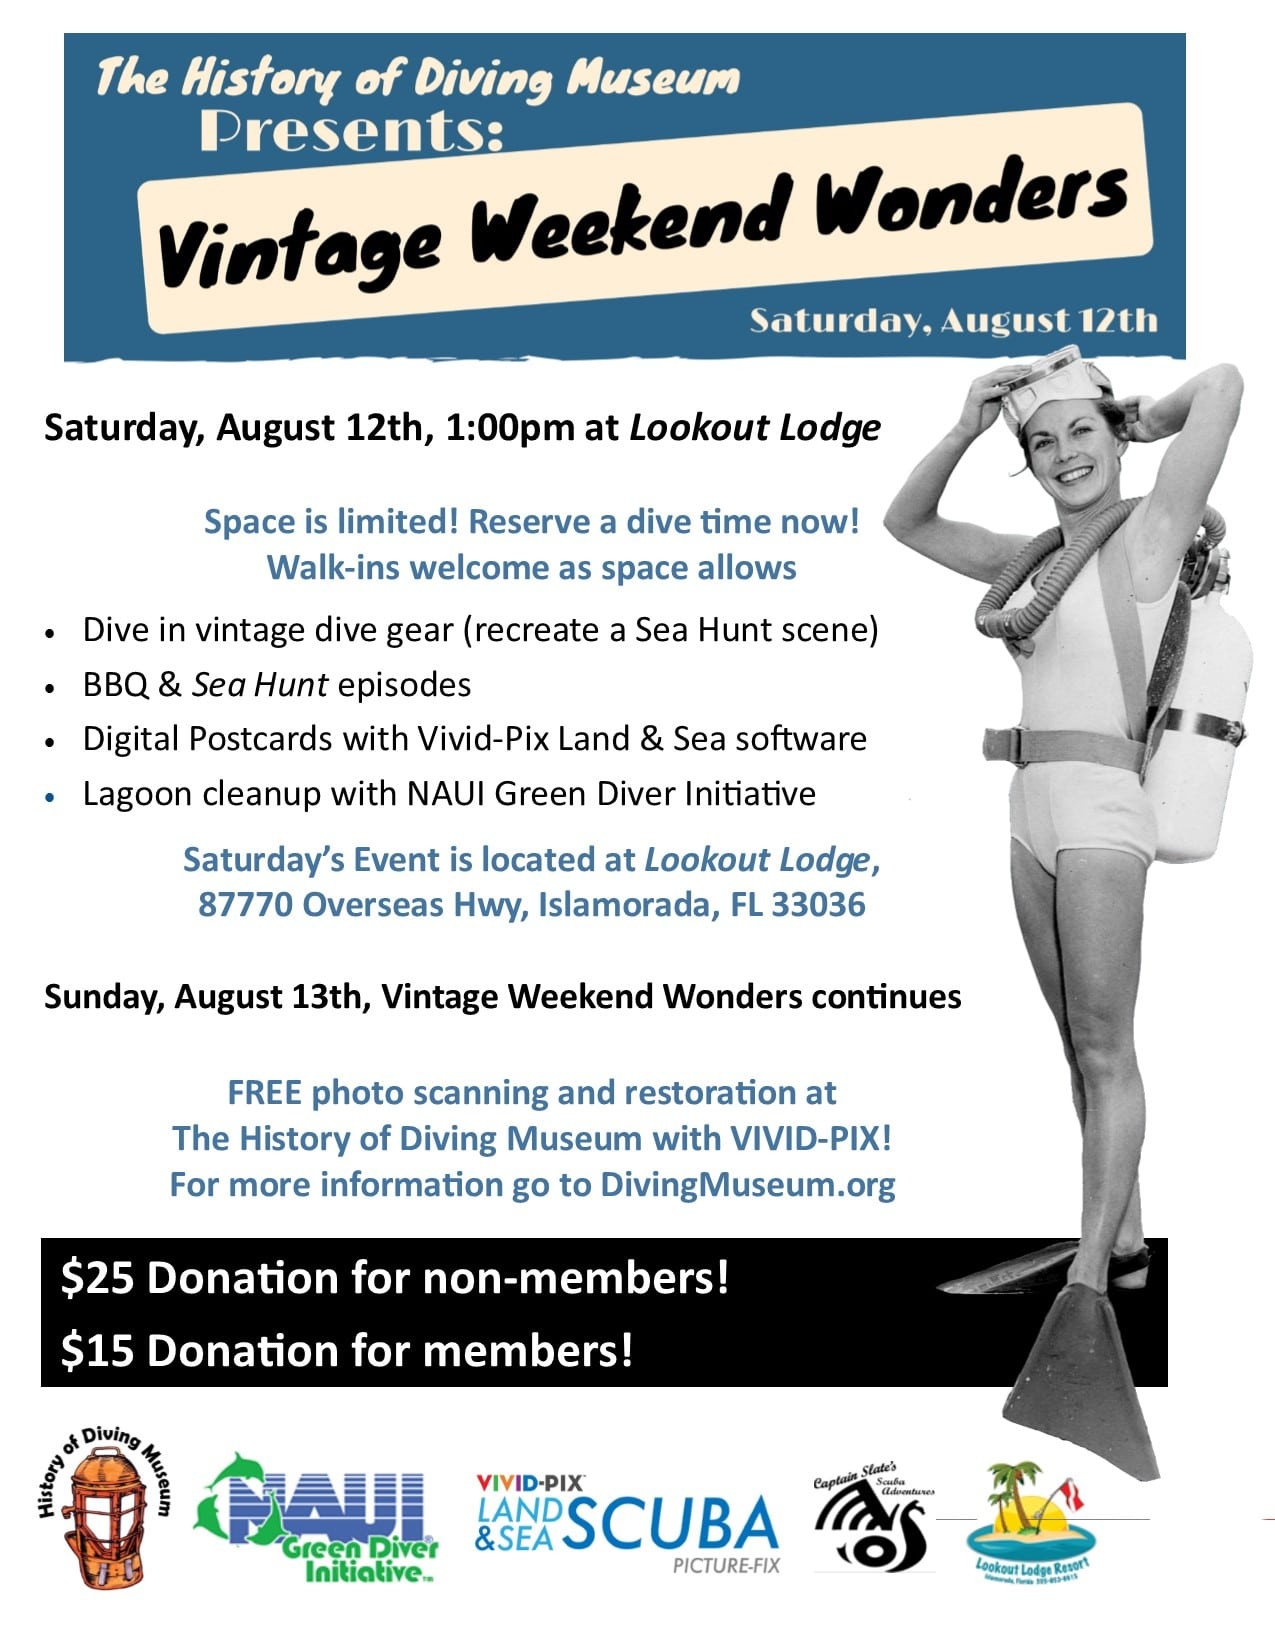 NAUI To Sponsor History Of Diving Museum 'Vintage Weekend Wonders' Event